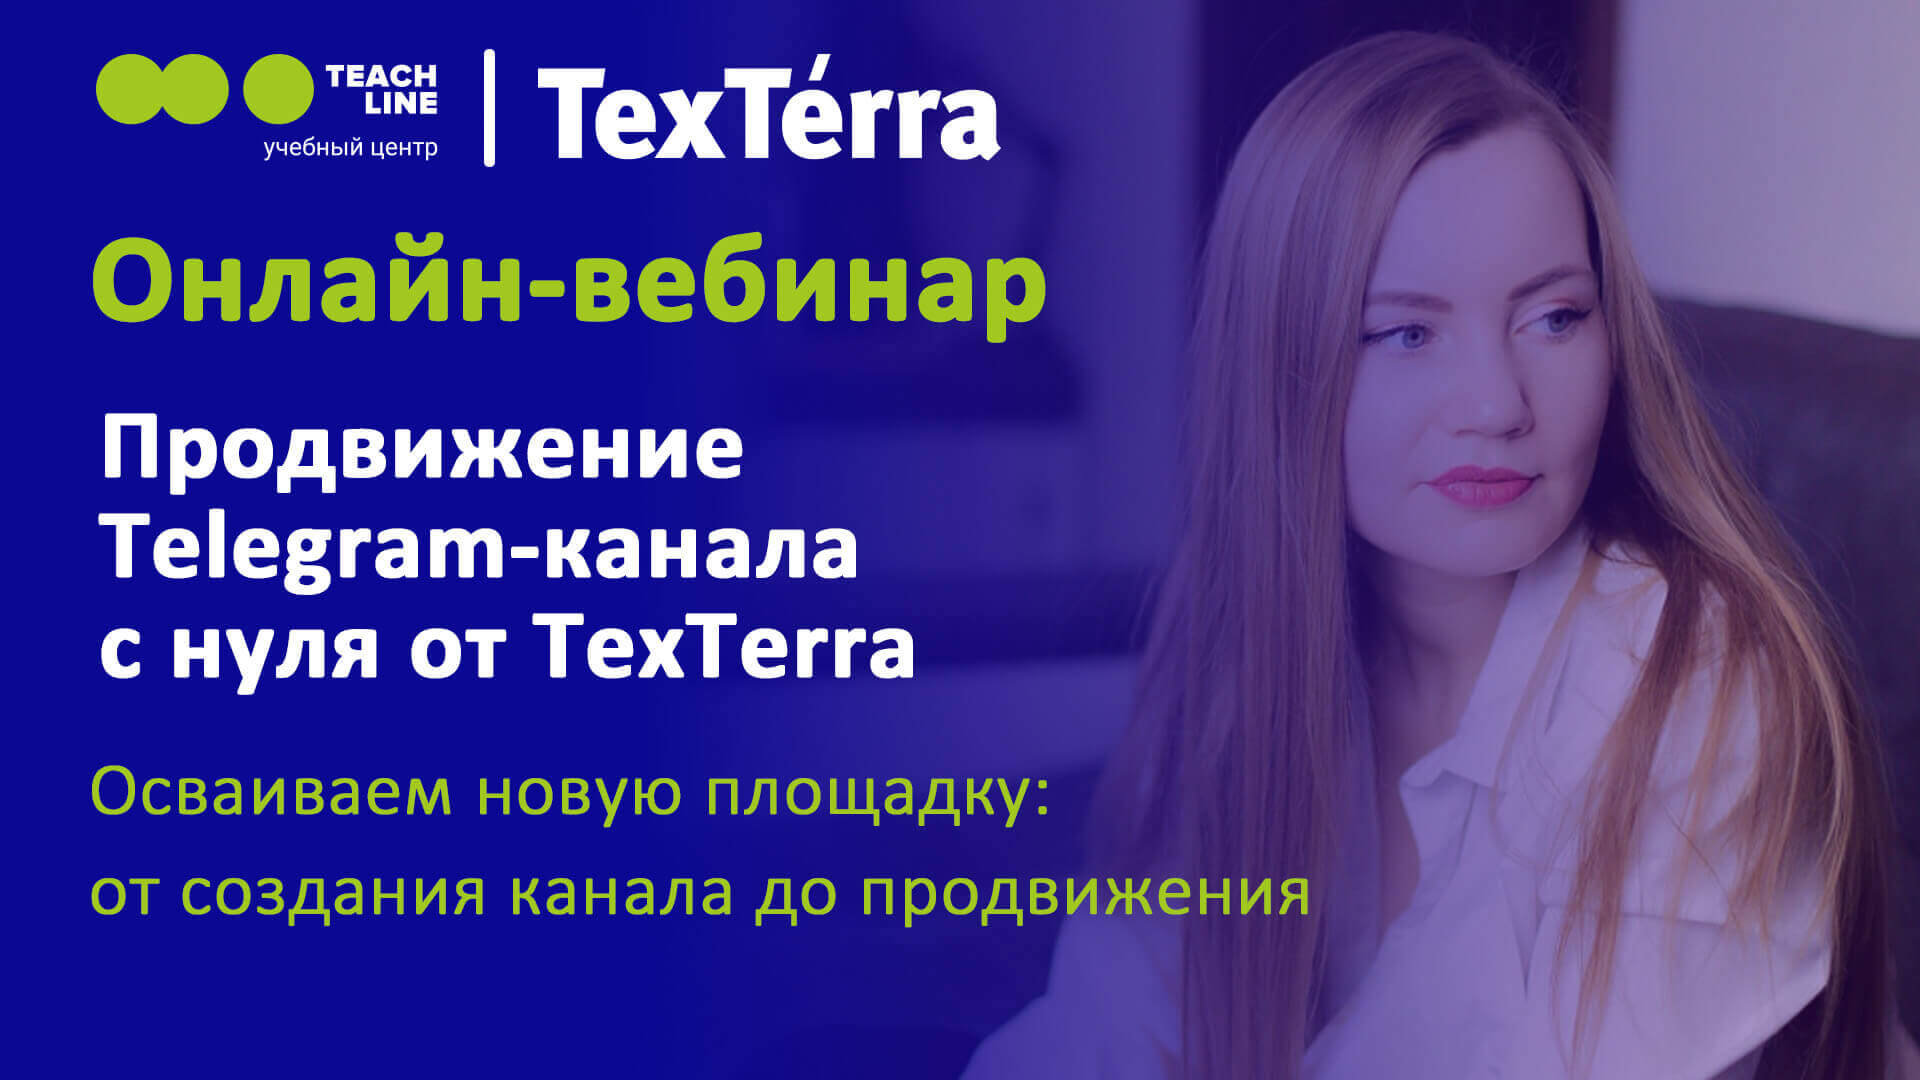 TexTerra — Продвижение Telegram-канала с нуля